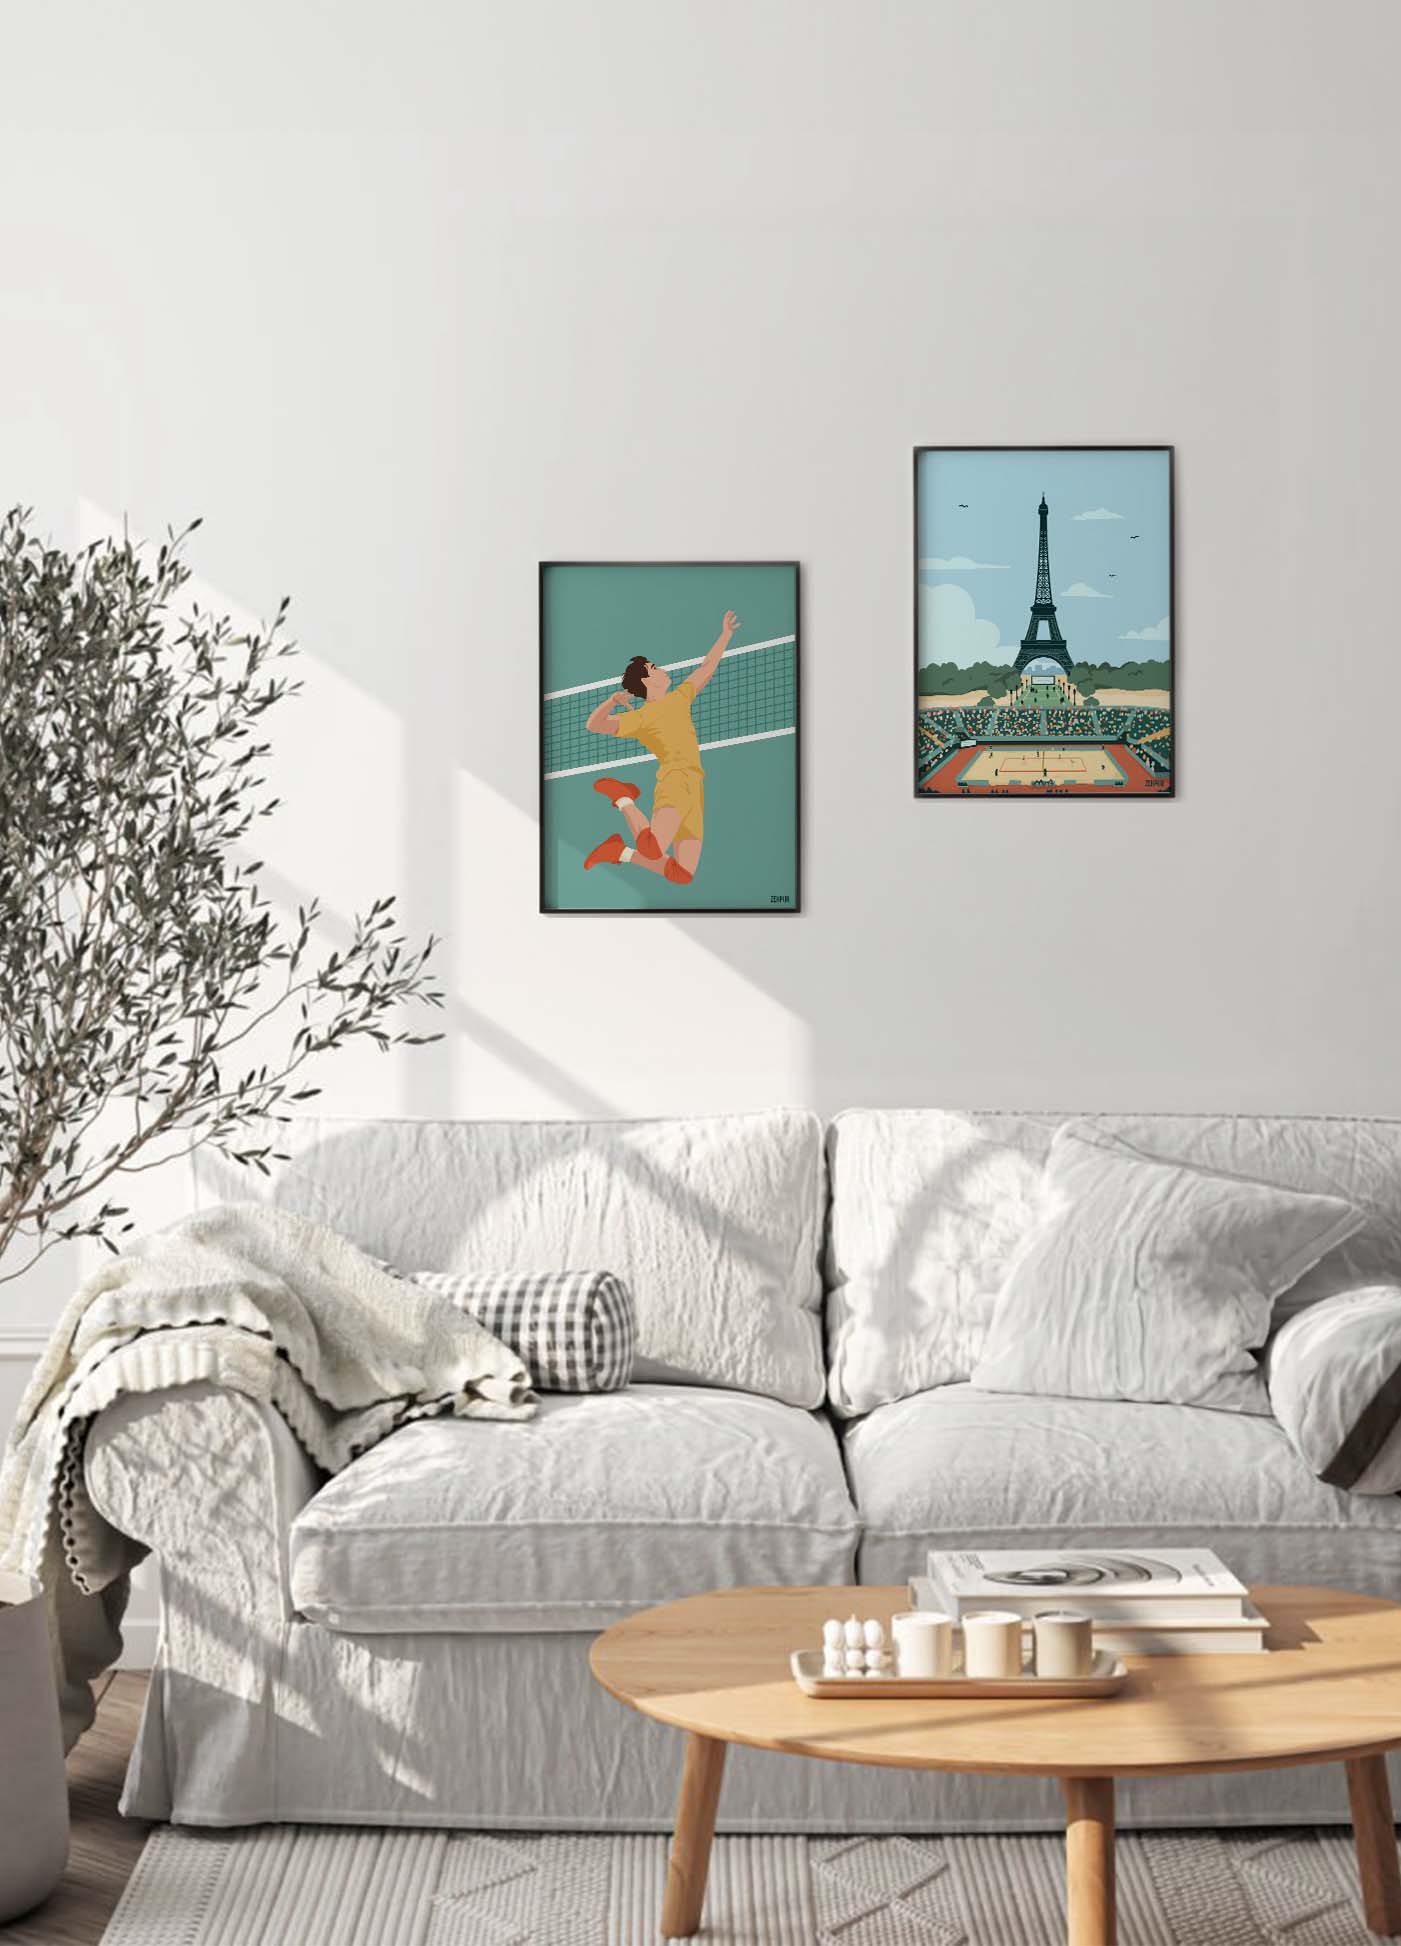 Affiche de volley-ball pour Paris 2024 avec une illustration de la Tour Eiffel surplombant un match de volley-ball, dans un style graphique moderne